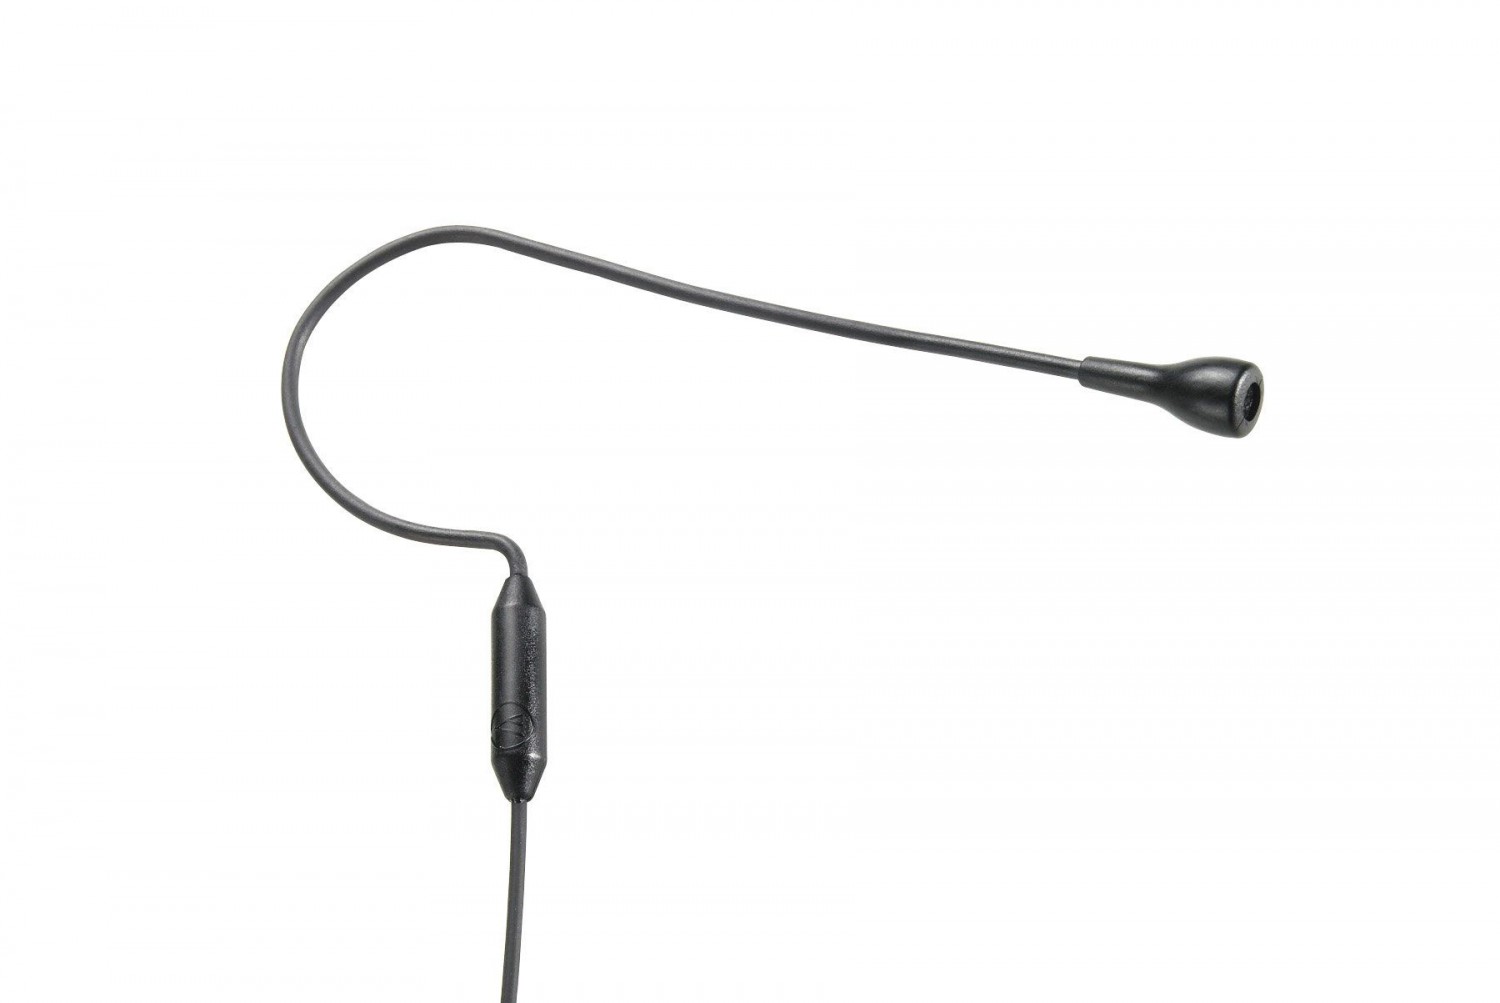 Audio-Technica PRO92cW - Mikrofon pojem. nagłowny